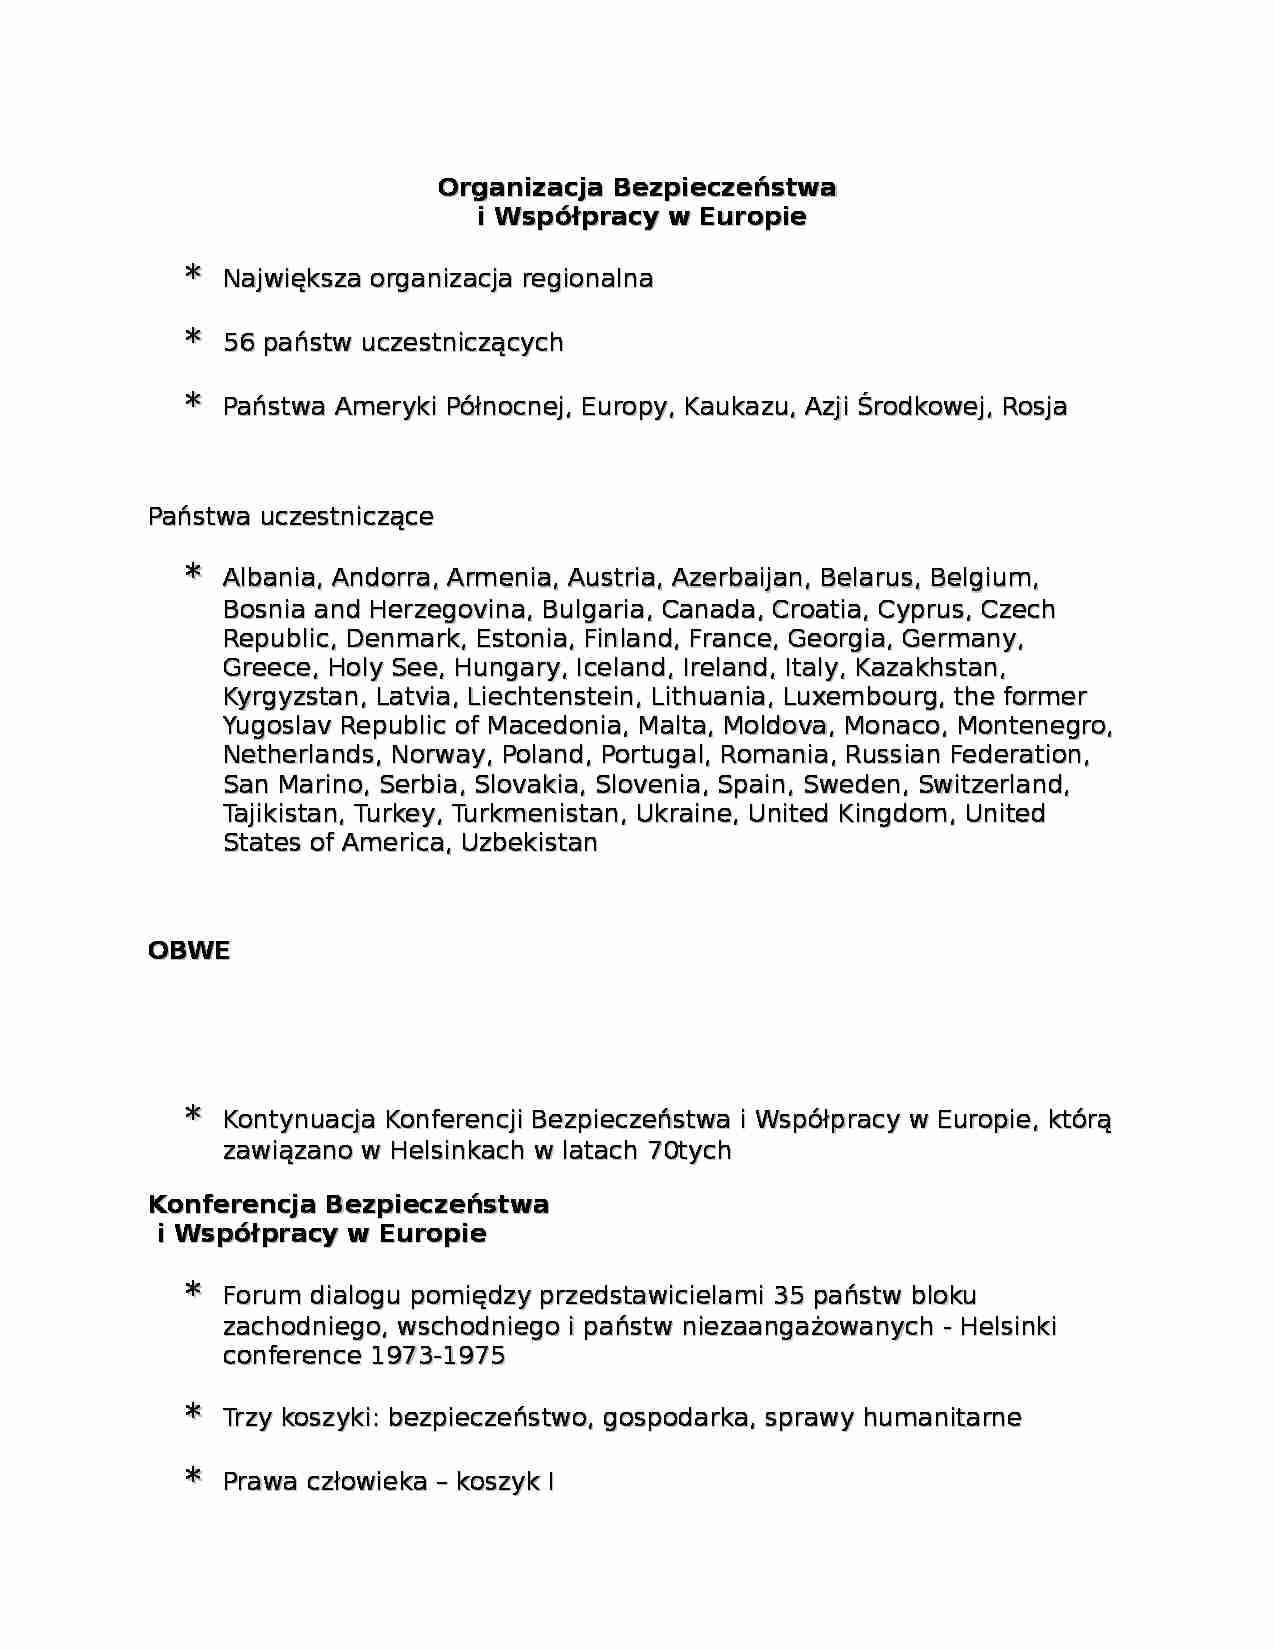 Organizacja Bezpieczeństwa i Współpracy w Europie-opracowanie - strona 1